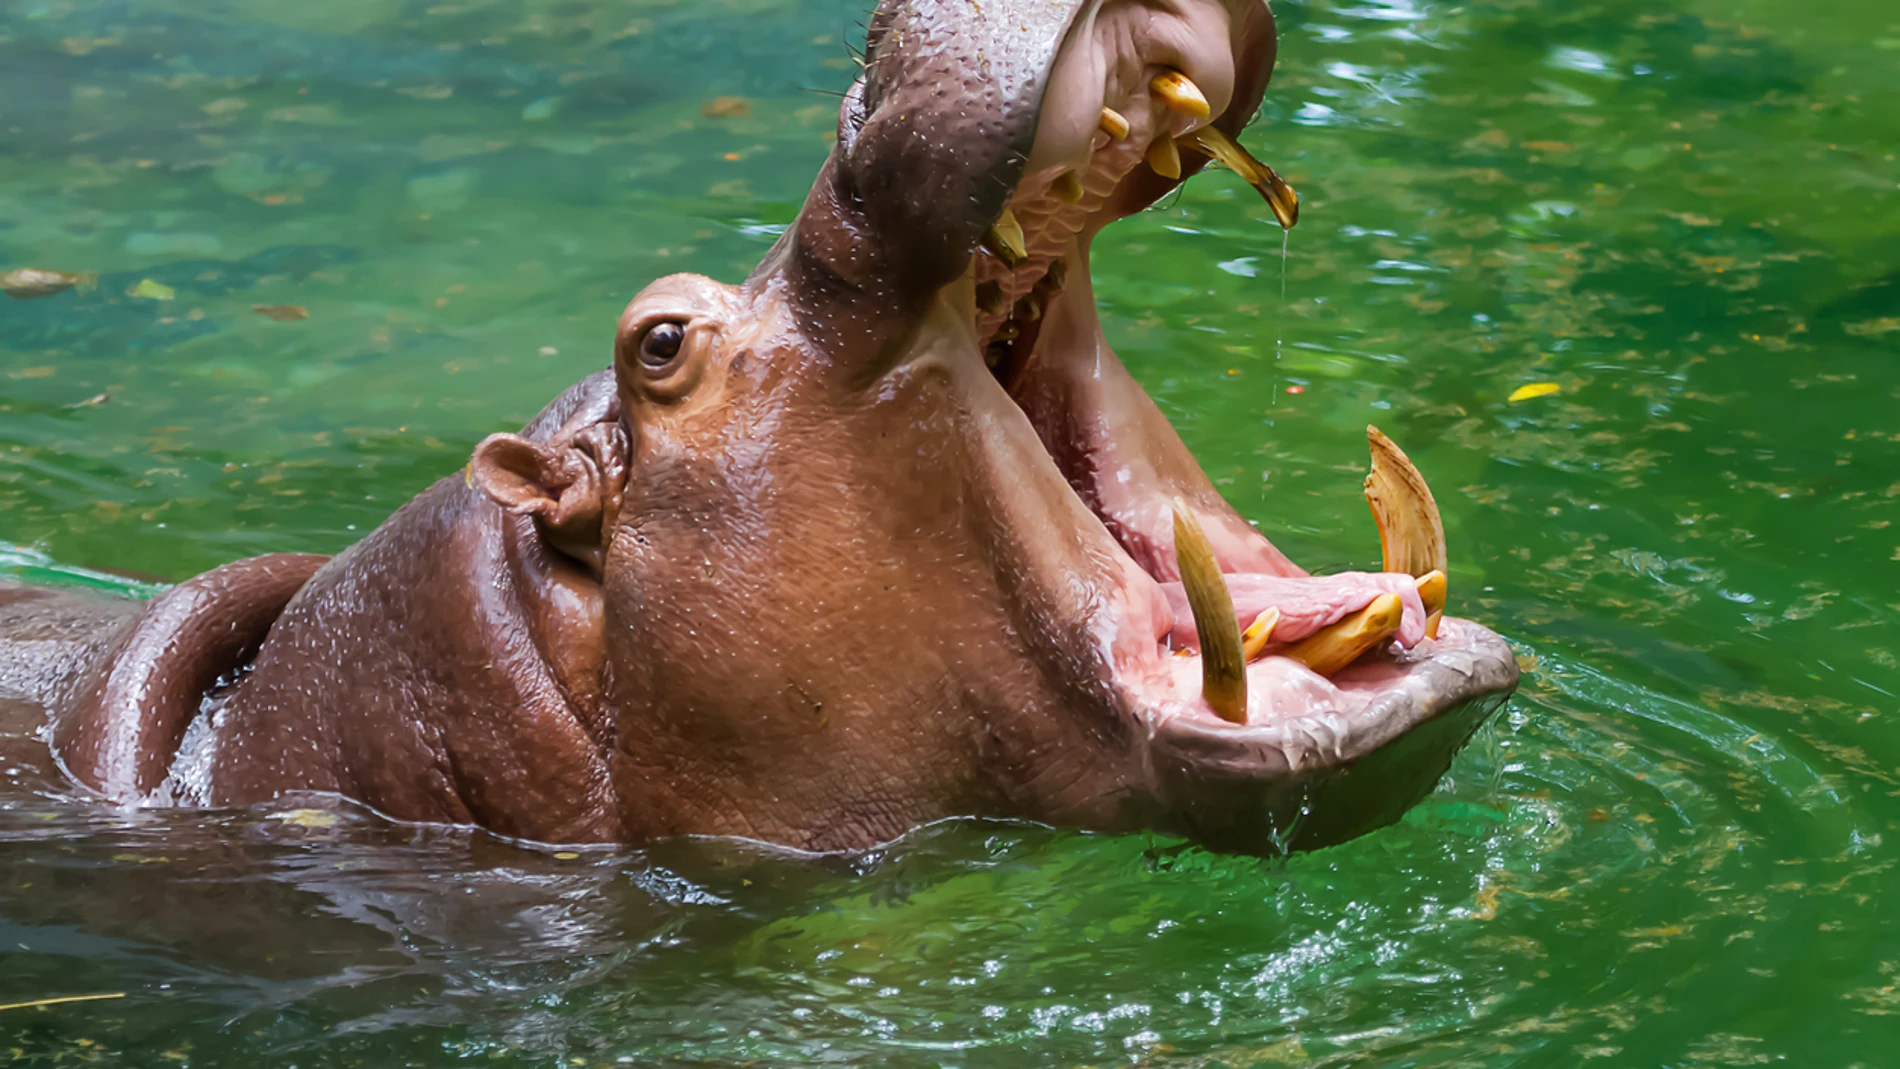 Hipopótamo atacó a campesino en Colombia - Porlavisión